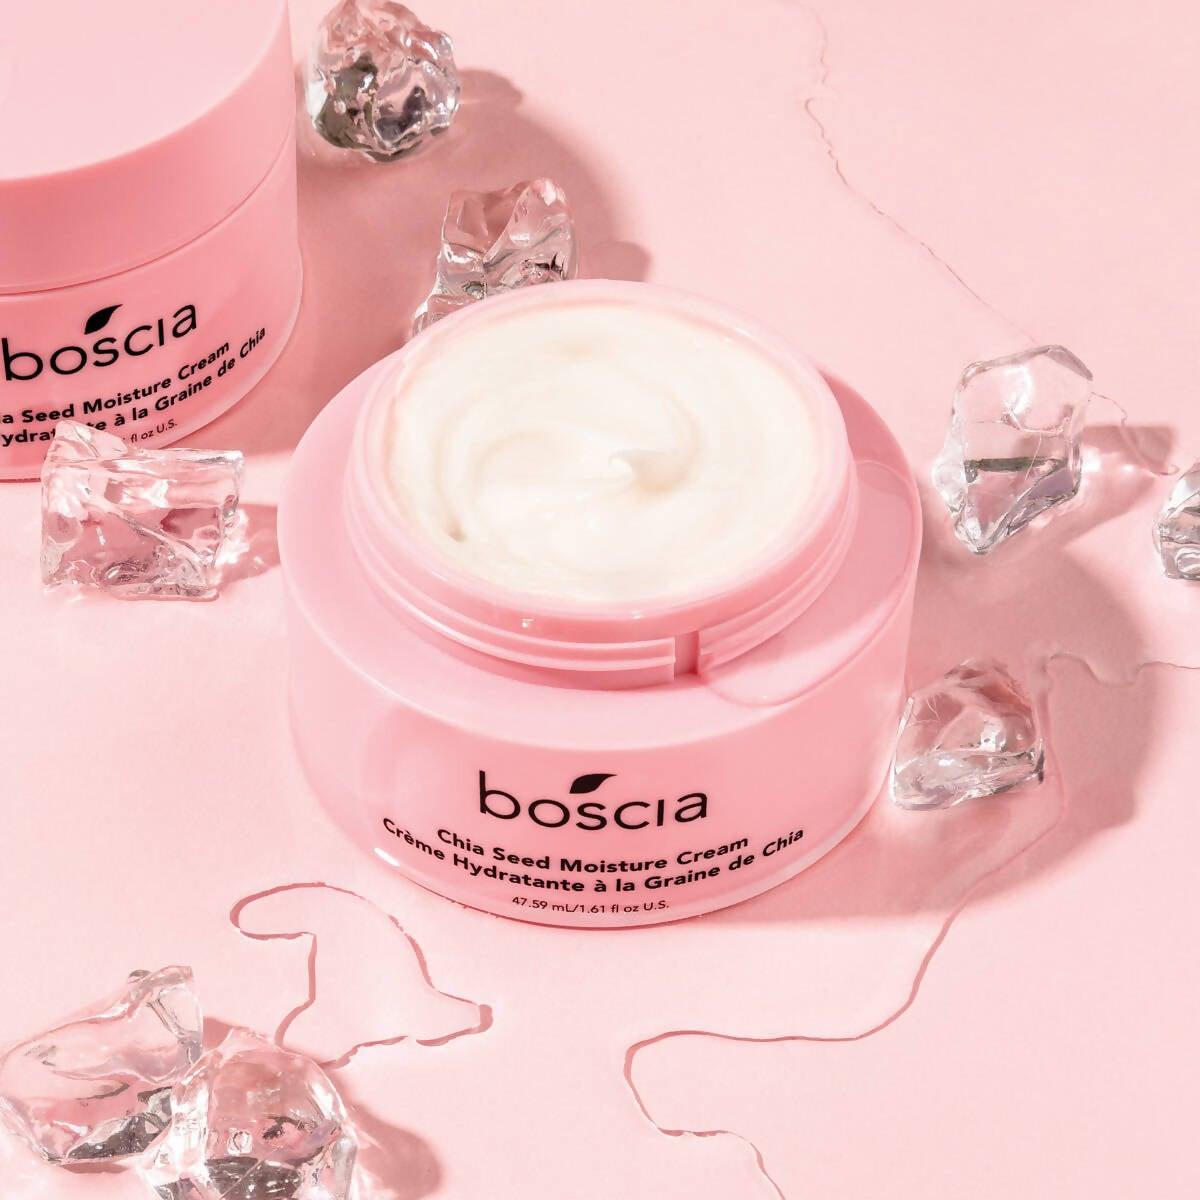 Boscia Daily Essentials Routine Set Skin Care Costco UK   